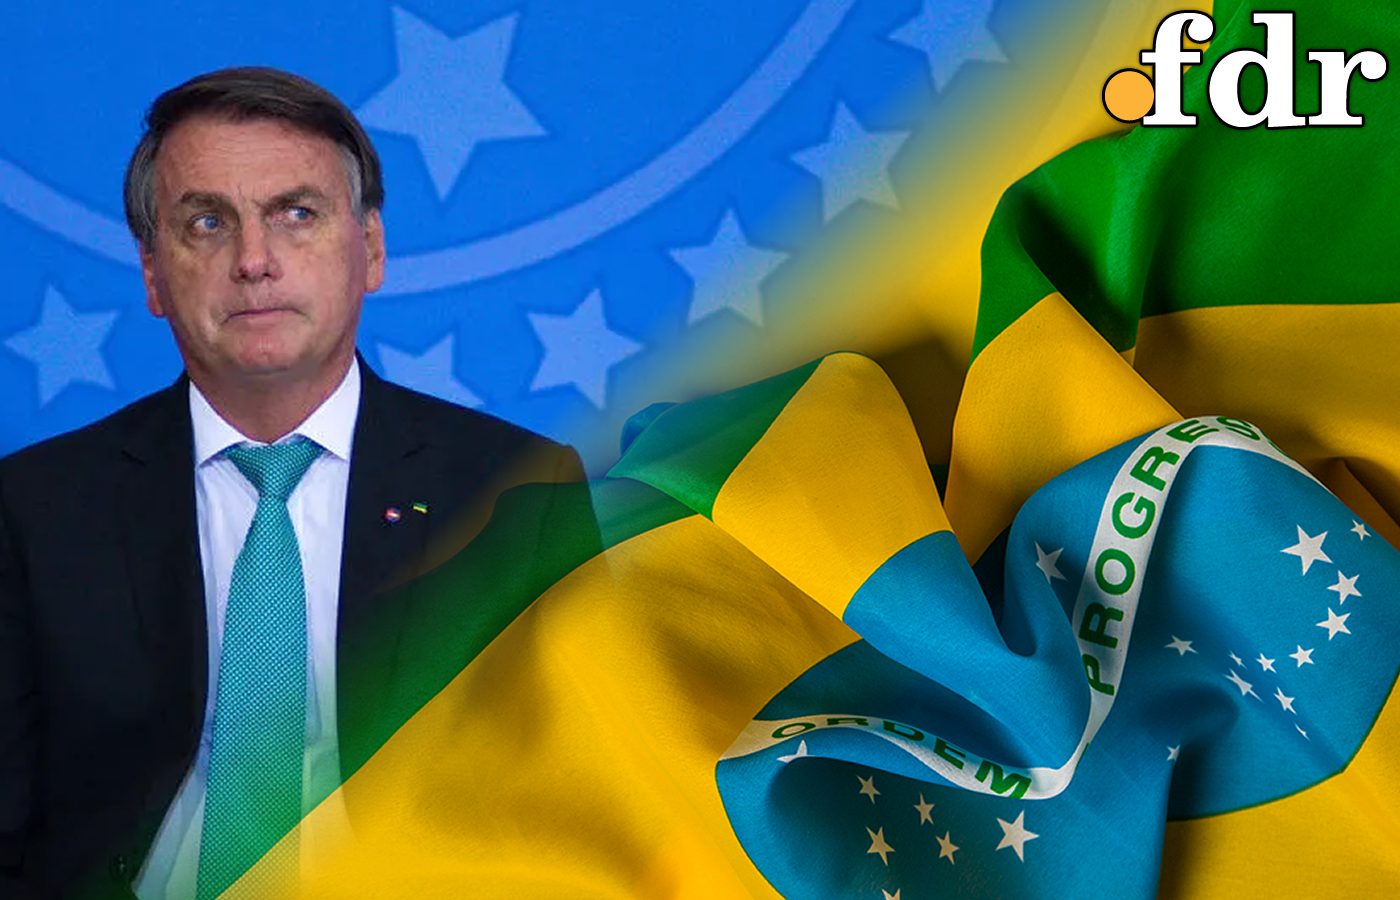 Eleições podem impactar negativamente economia brasileira; entenda